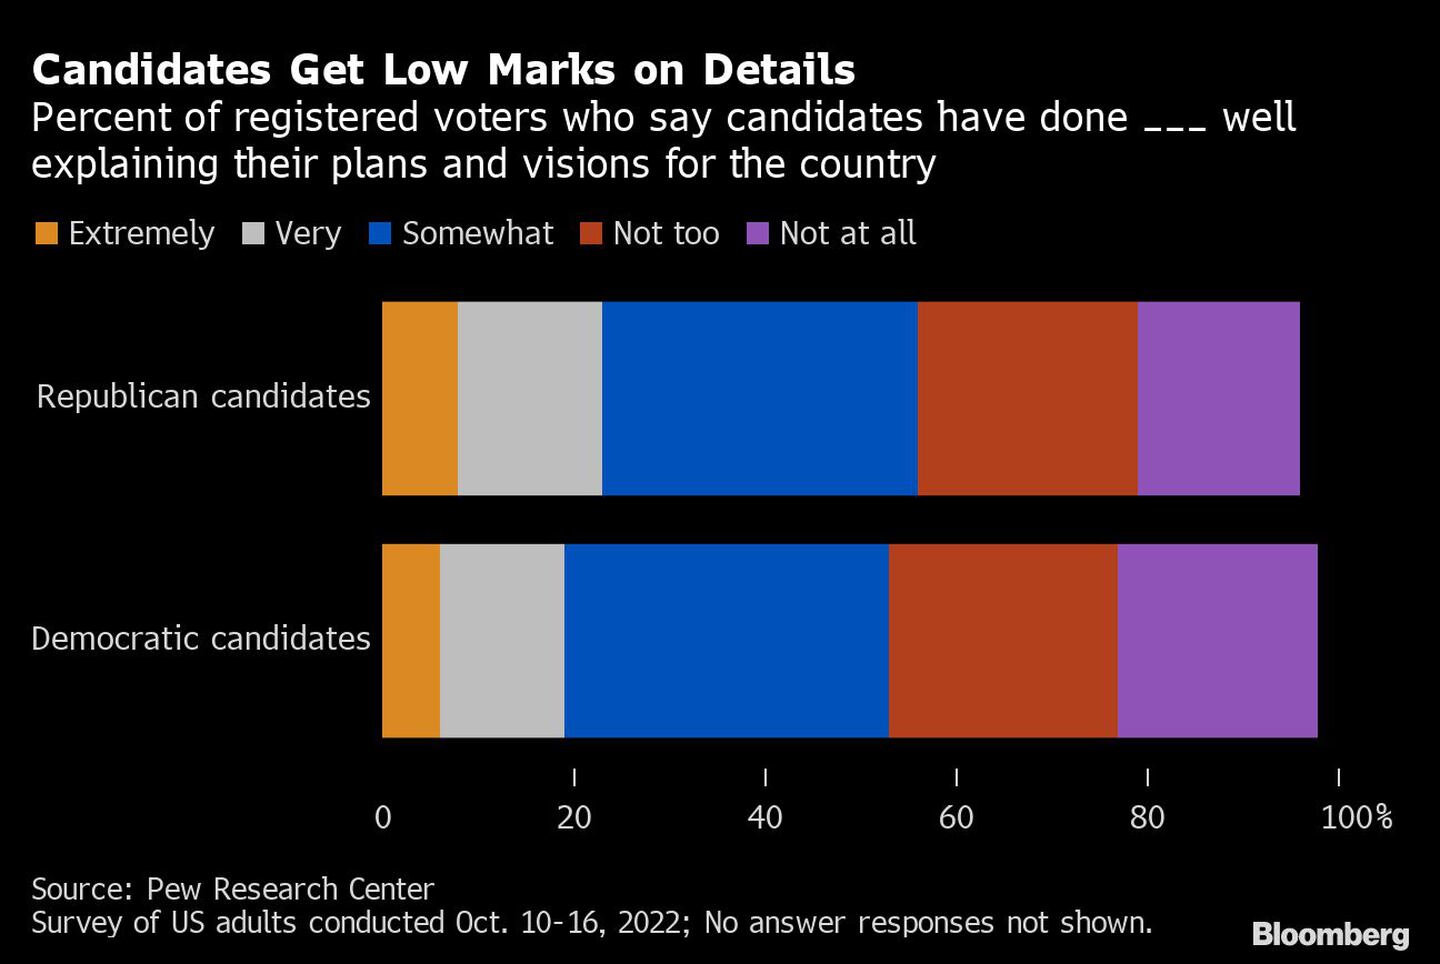 Los candidatos obtienen bajas calificaciones en los detalles | Porcentaje de votantes registrados que dicen que los candidatos han hecho ___ bien explicando sus planes y visiones para el paísdfd